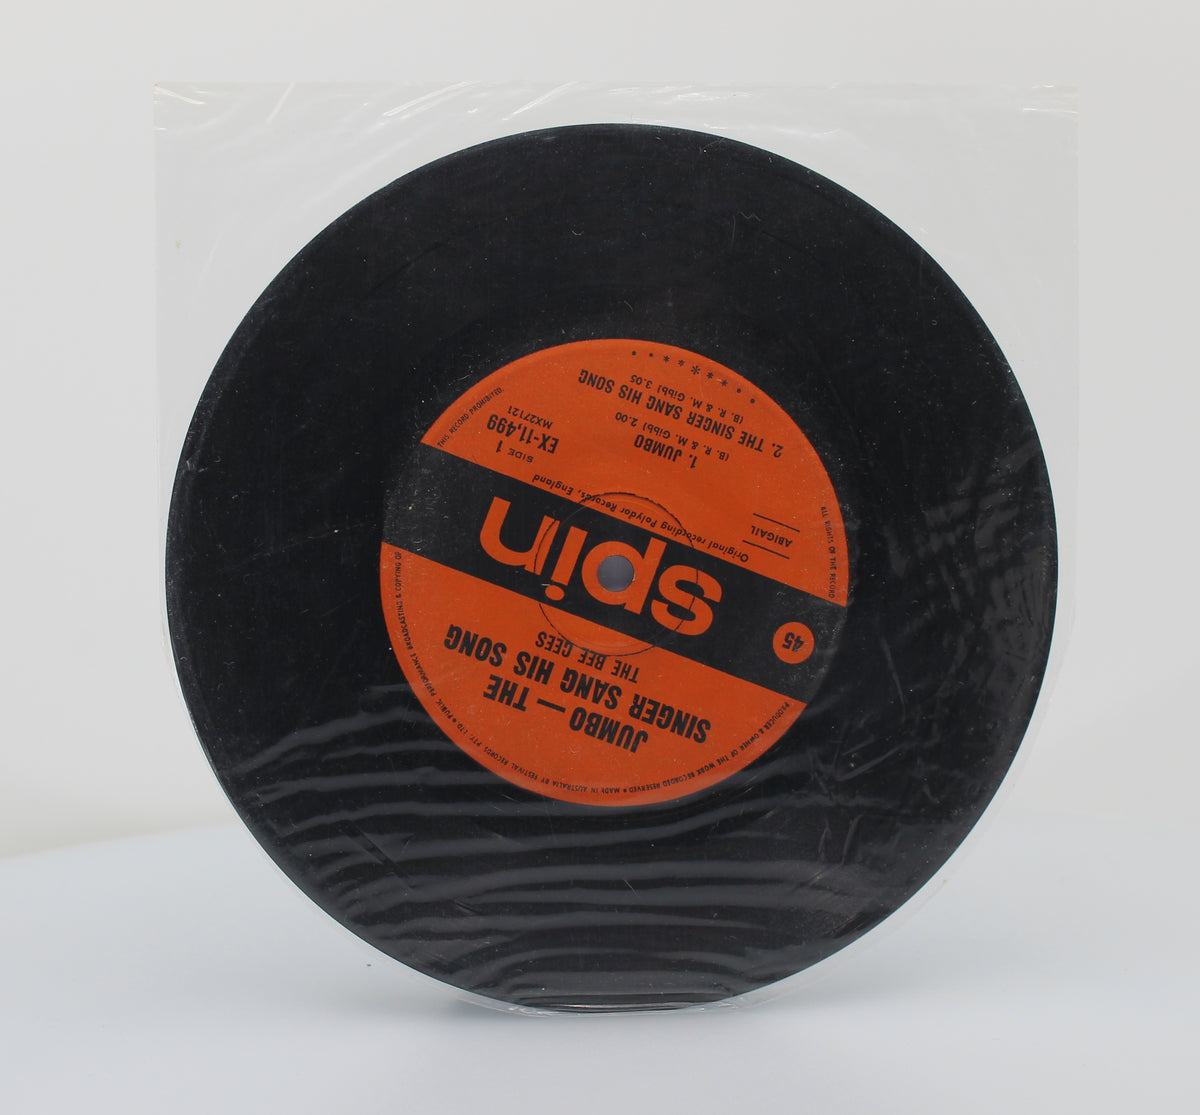 Bee Gees - Jumbo, Vinyl, 7&quot;, 45 RPM, EP, Mono, Australia 1968